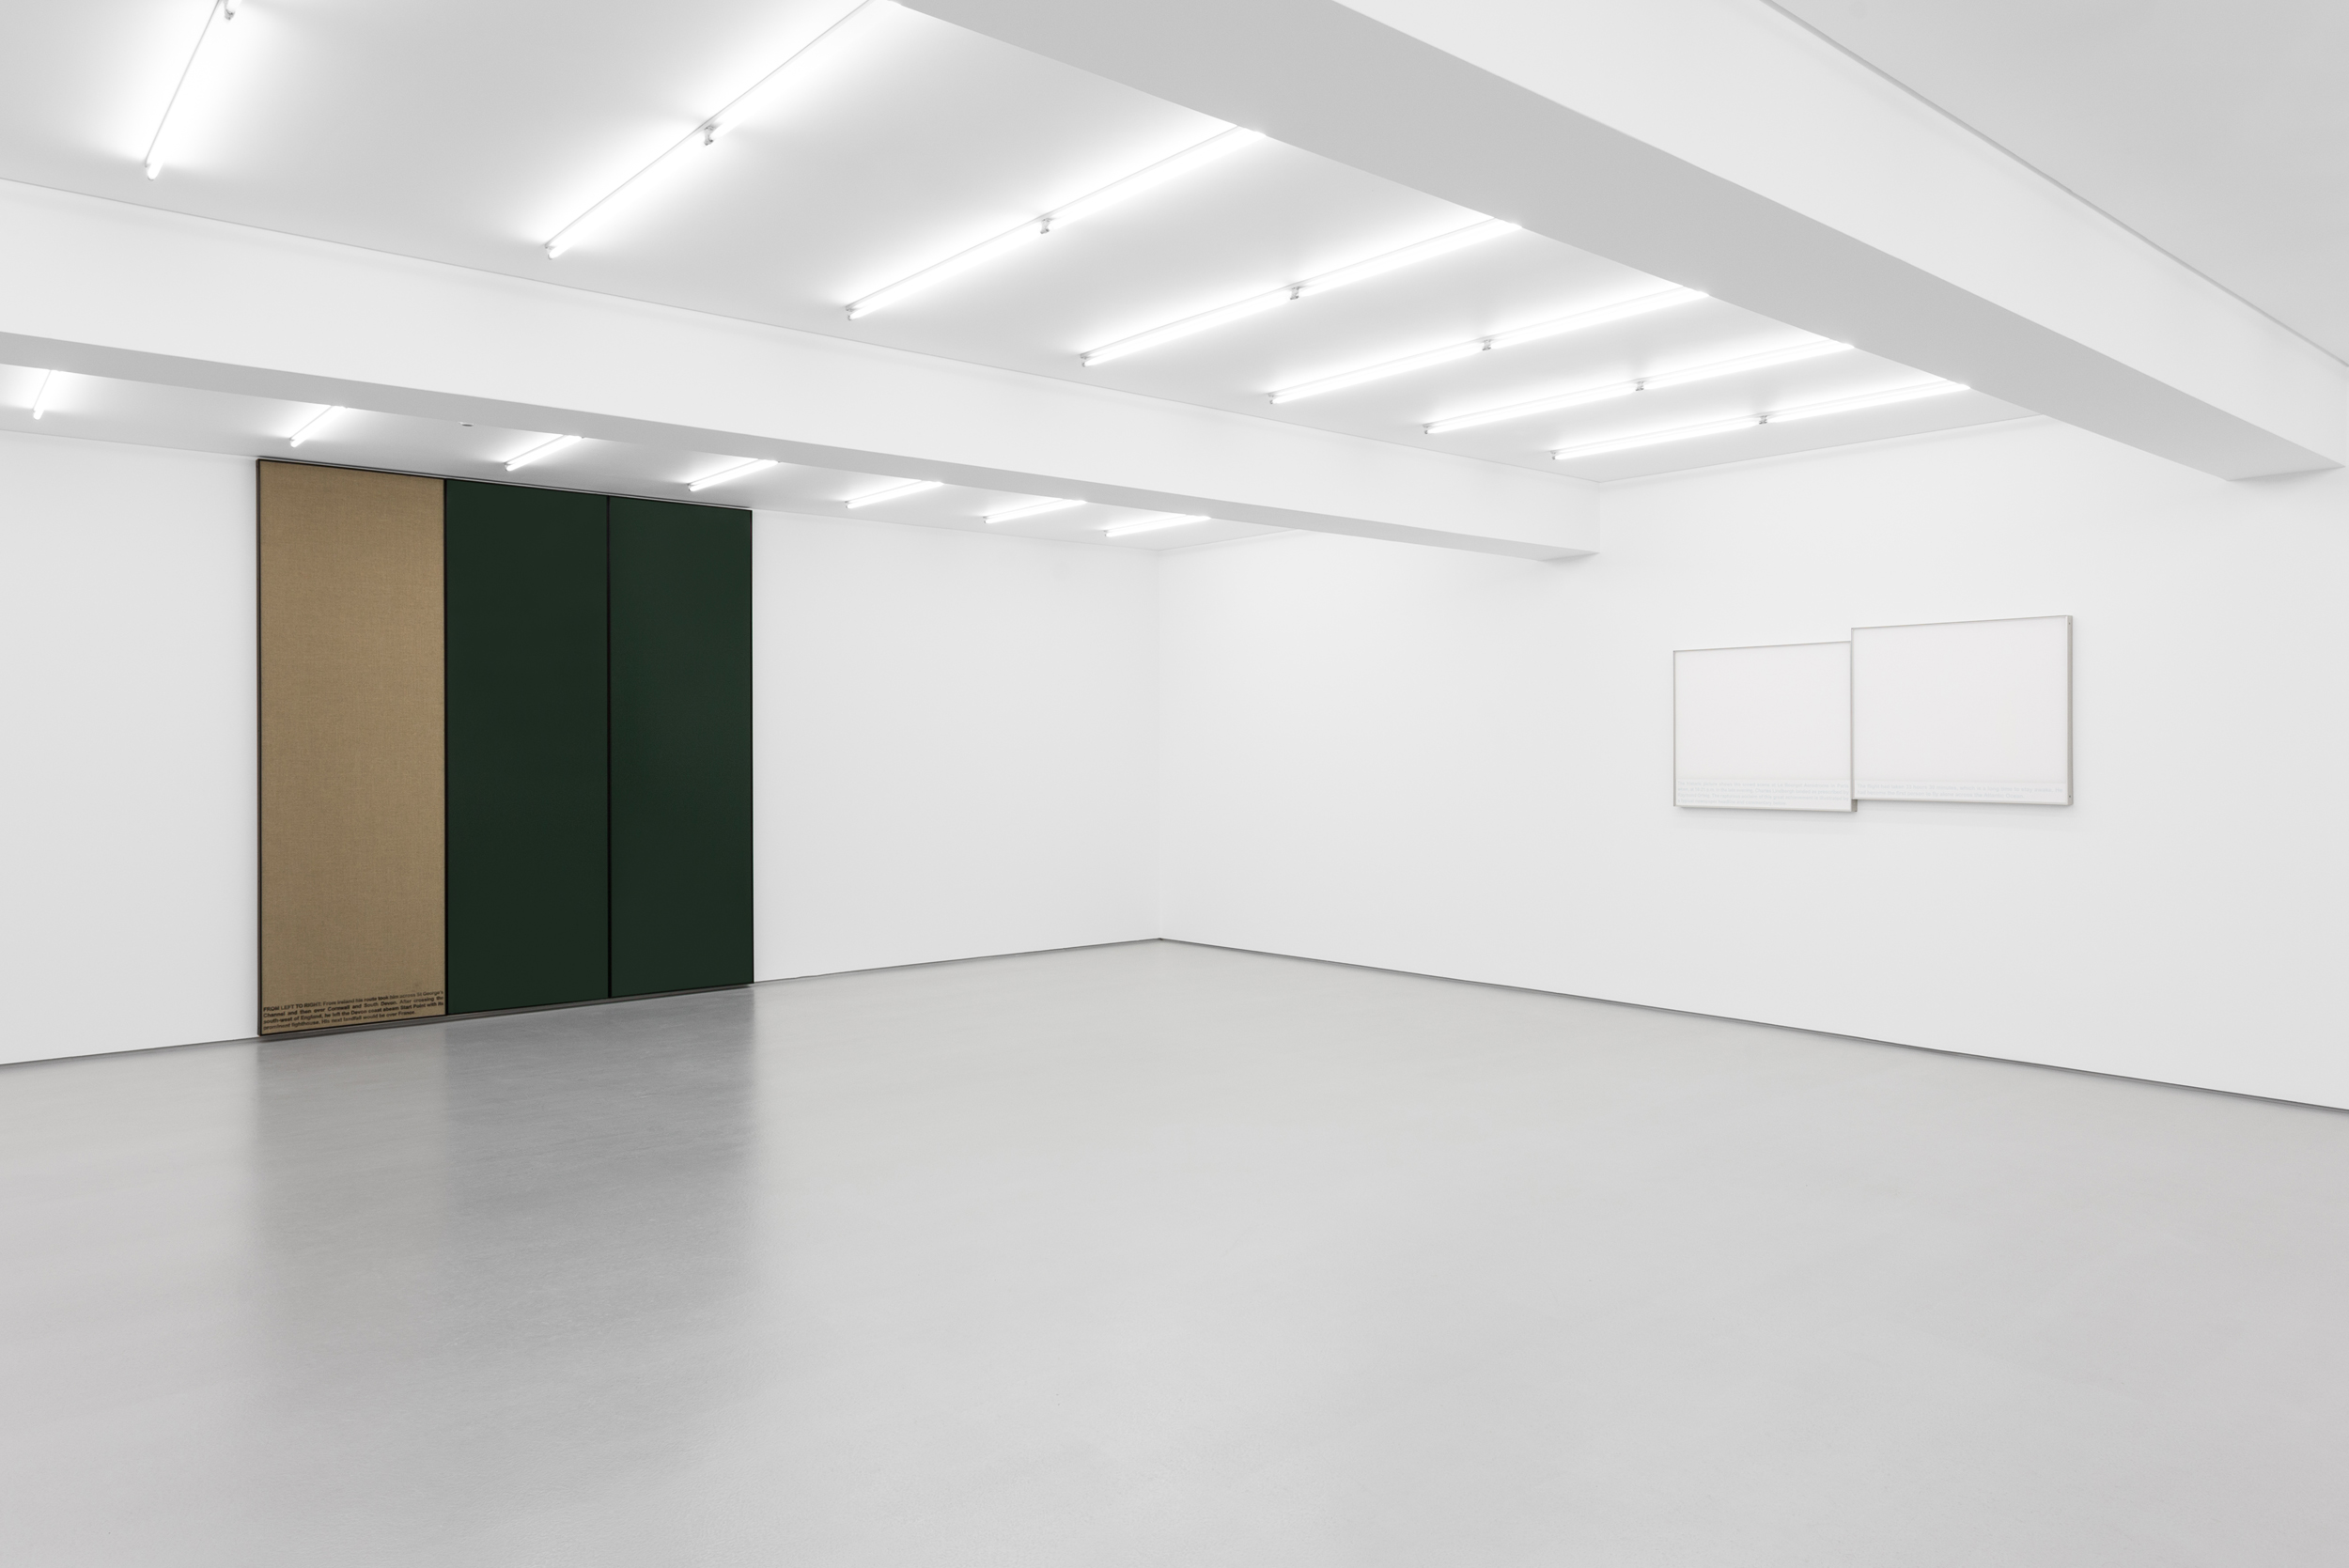 Exhibition view: A Mosca de Lindbergh, João Louro, Galeria Vera Cortês, 2019
